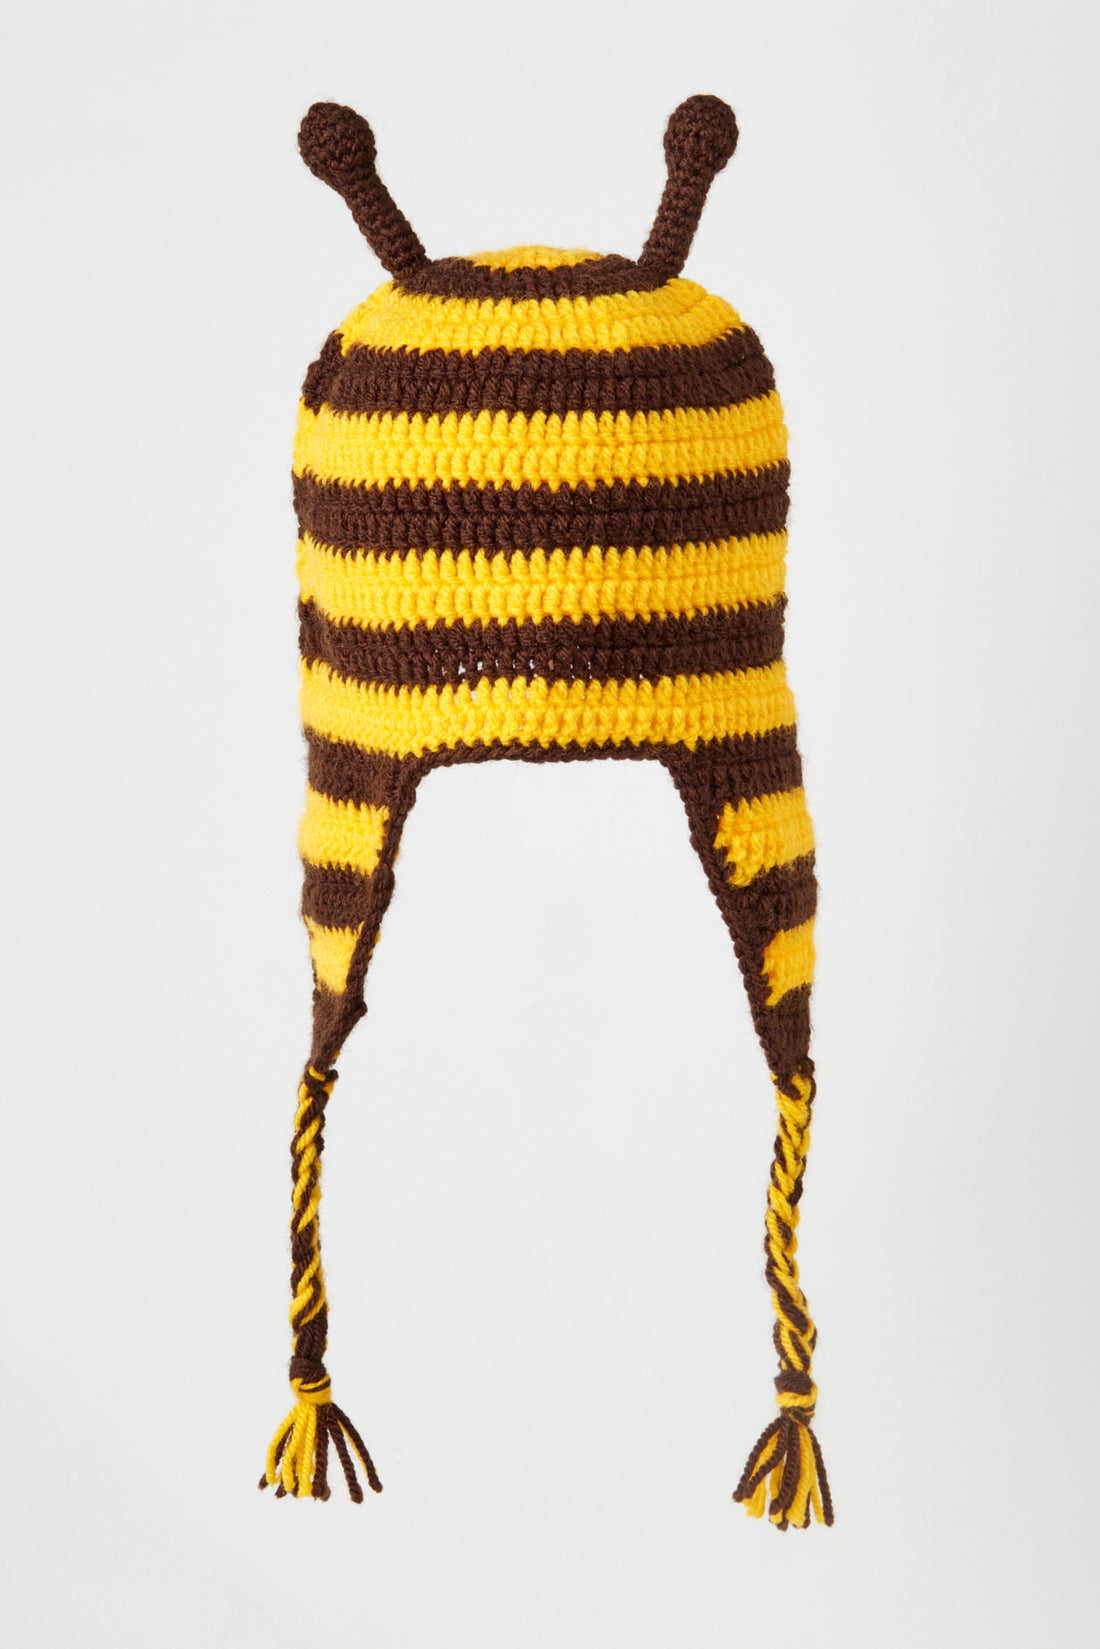 Bee Hat